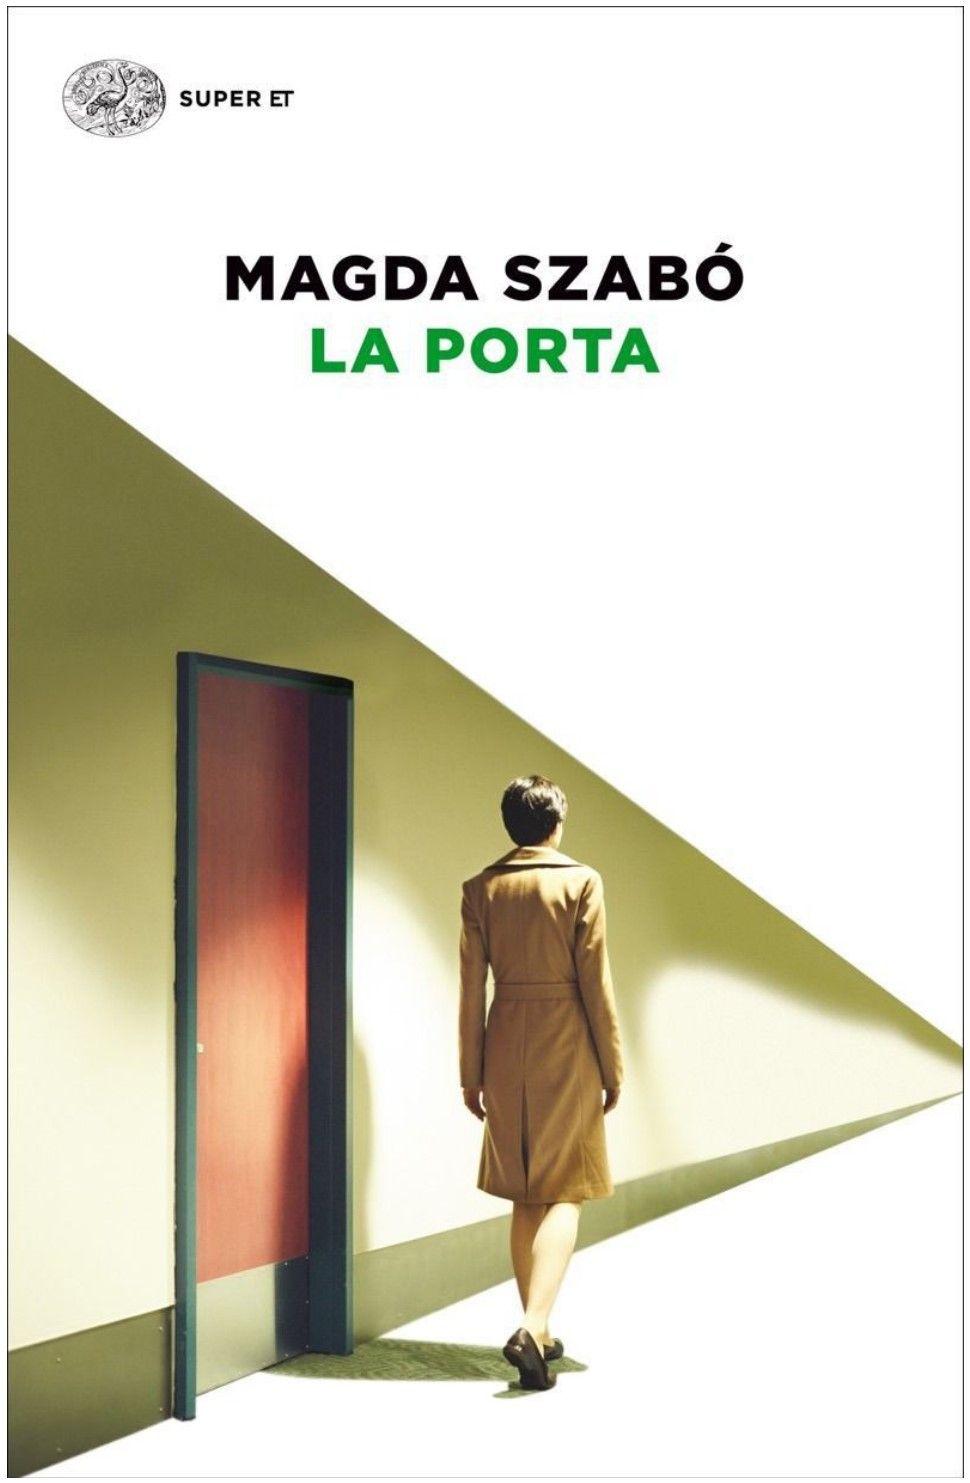 Libro "La porta" di Magda Szabo